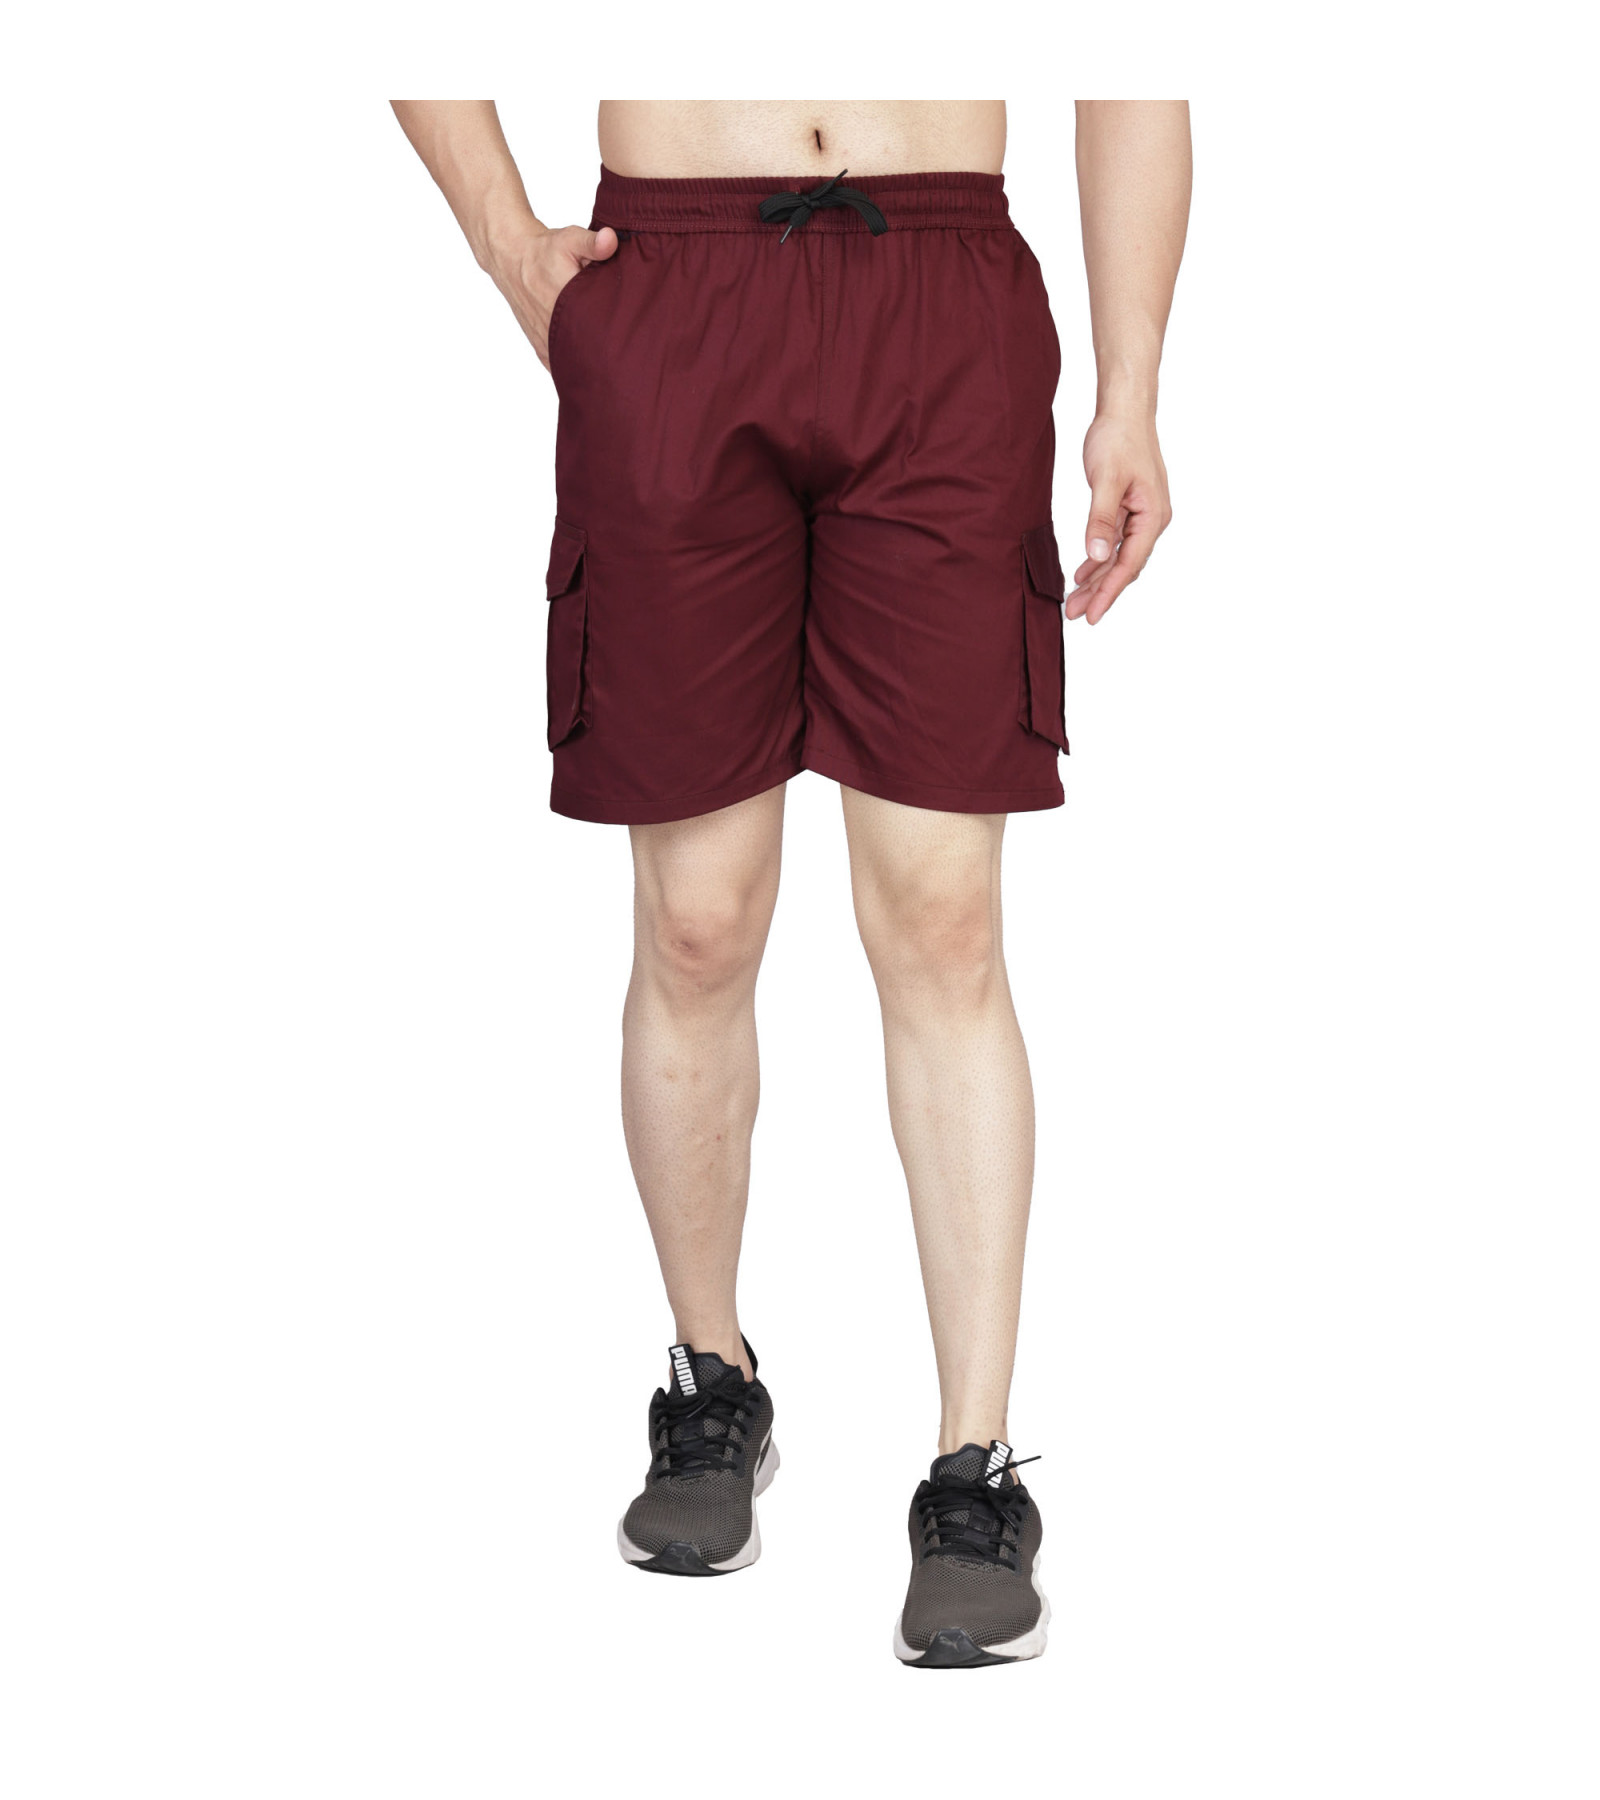 Abaranji Stylish Unique Men's shorts